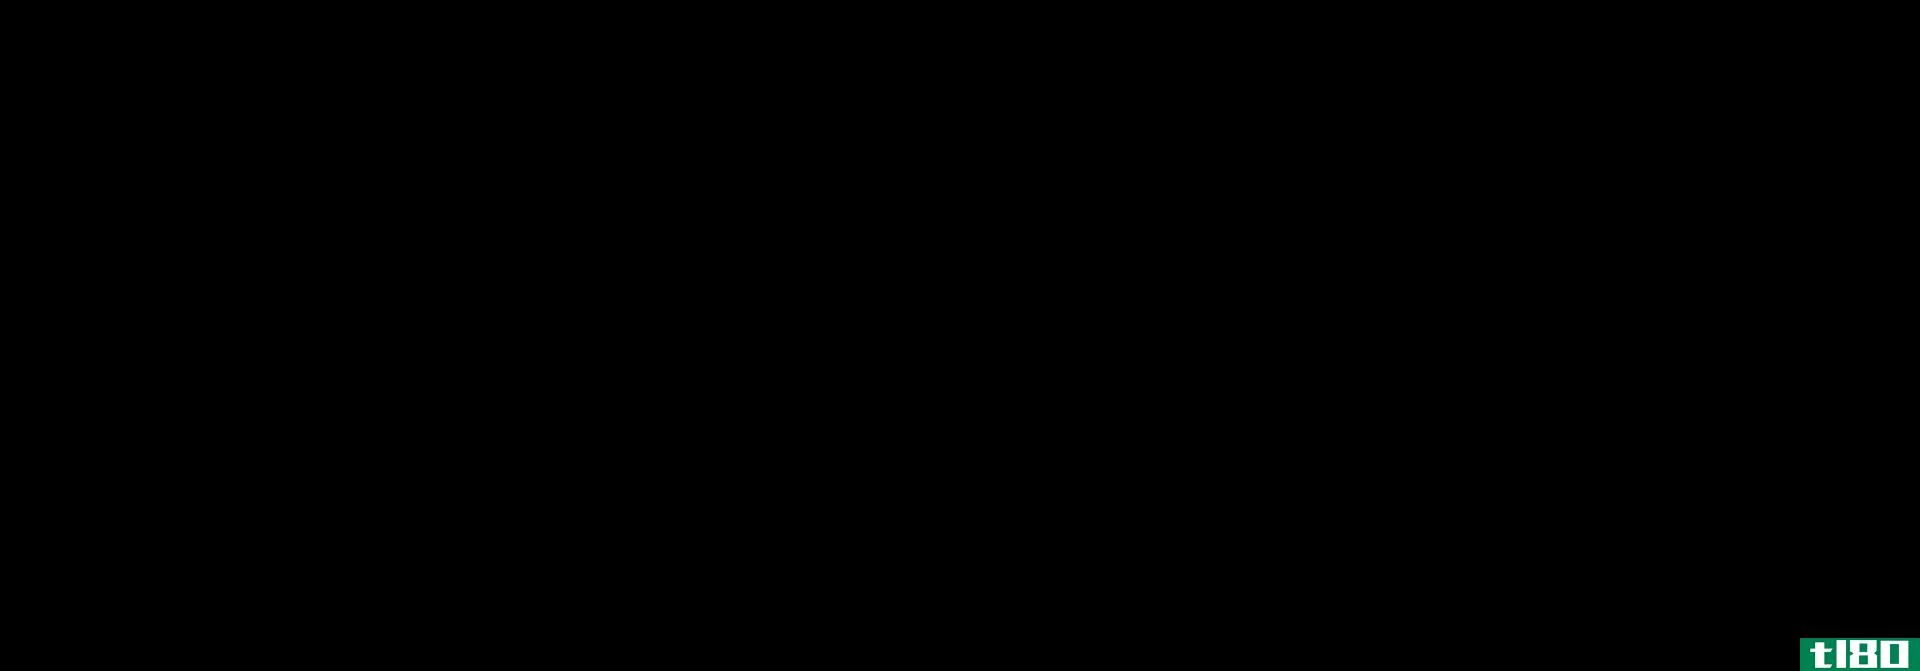 乙醇(ethanol)和二甲醚(dimethyl ether)的区别